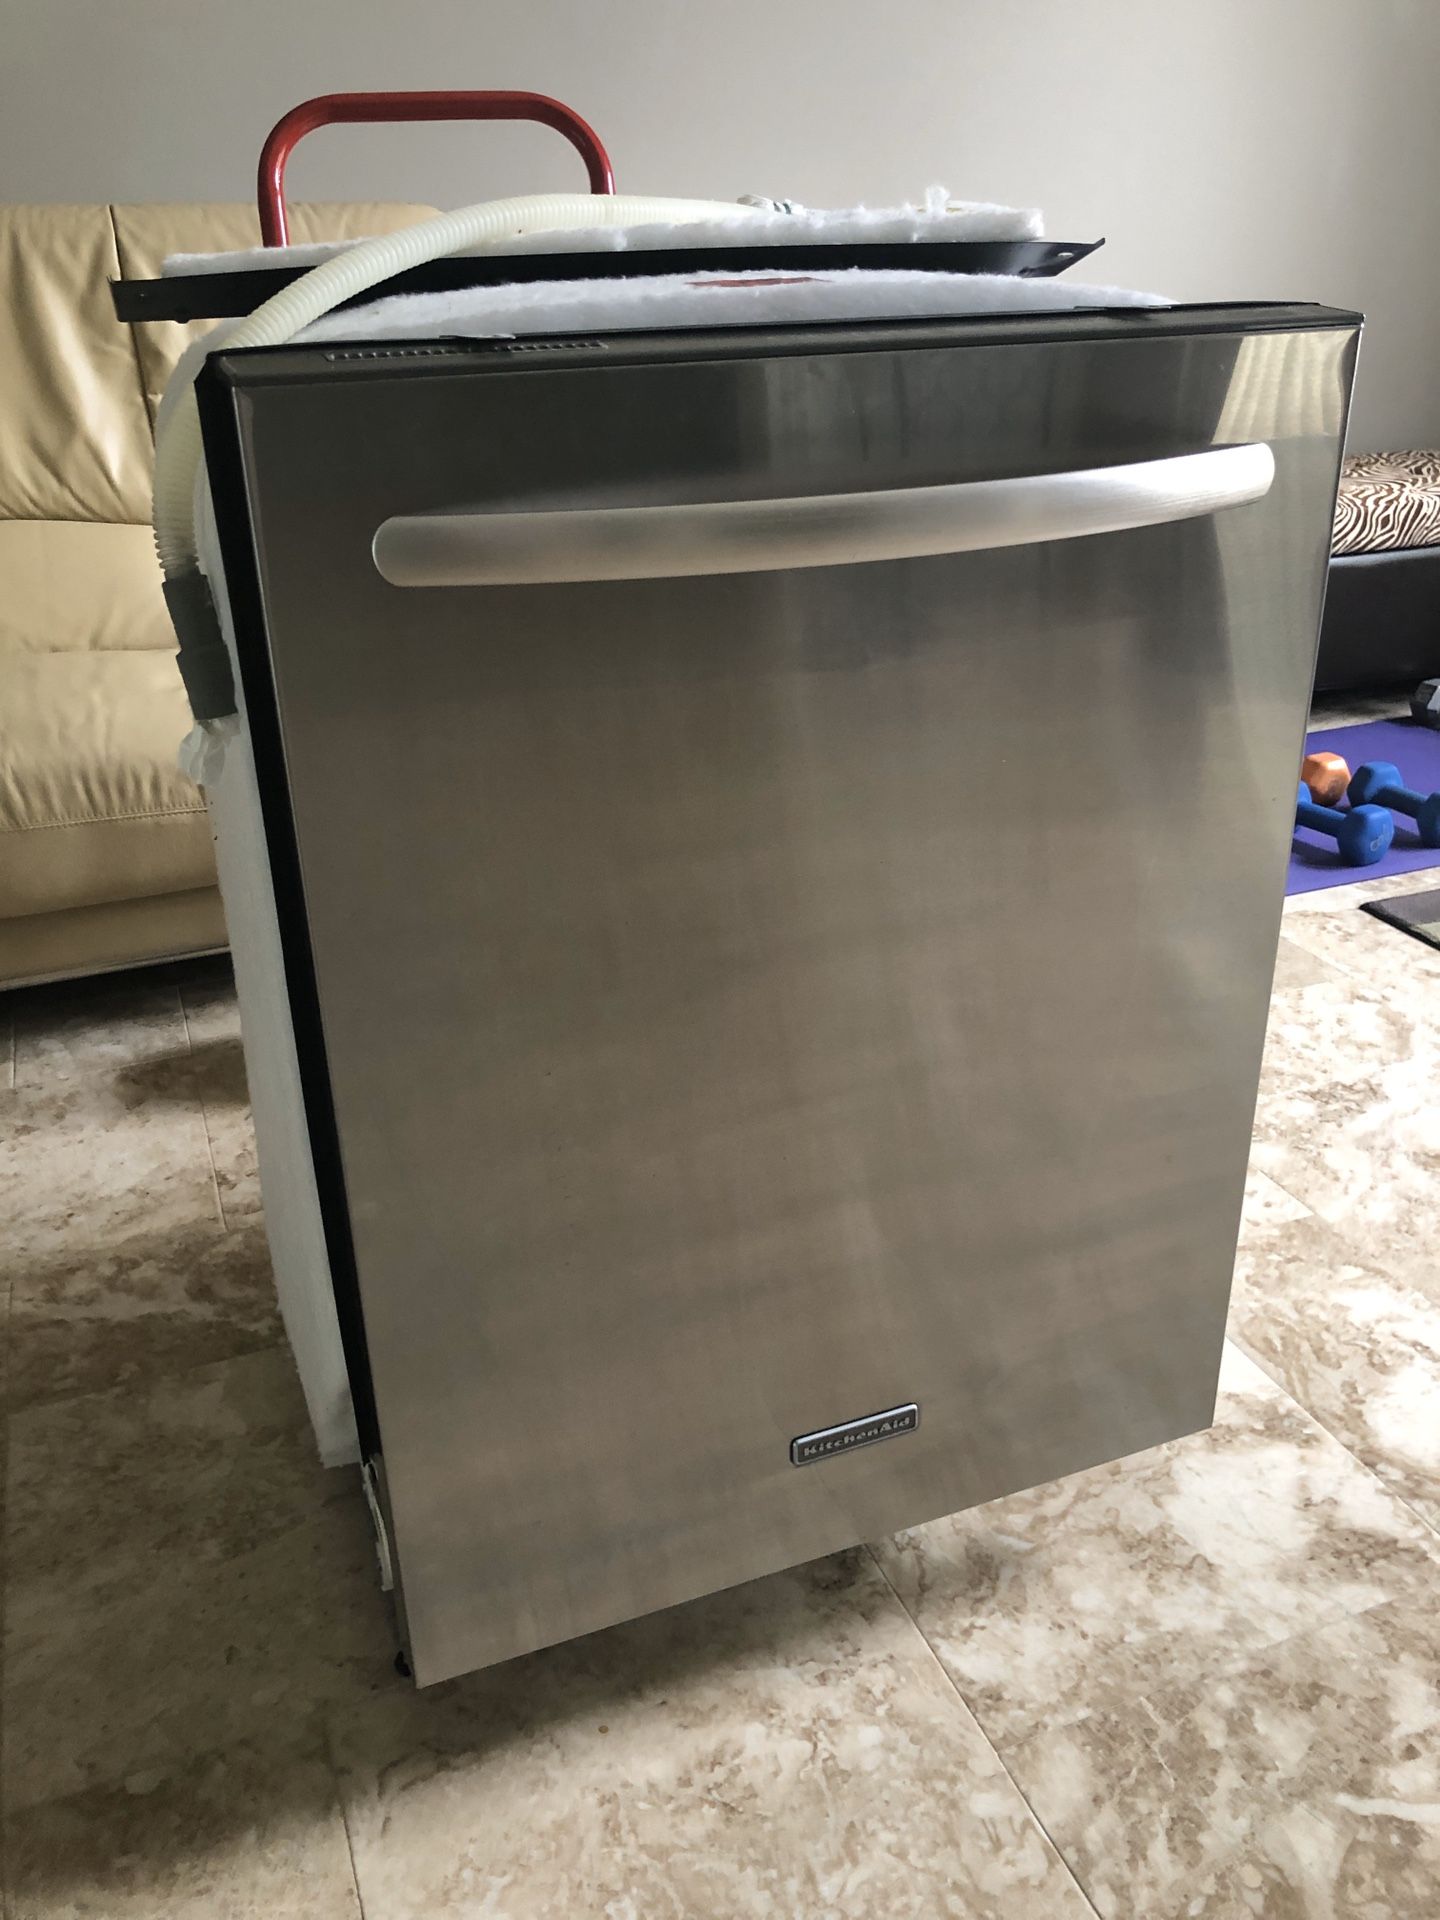 KithchenAid 24” Stainless Steel Dishwasher